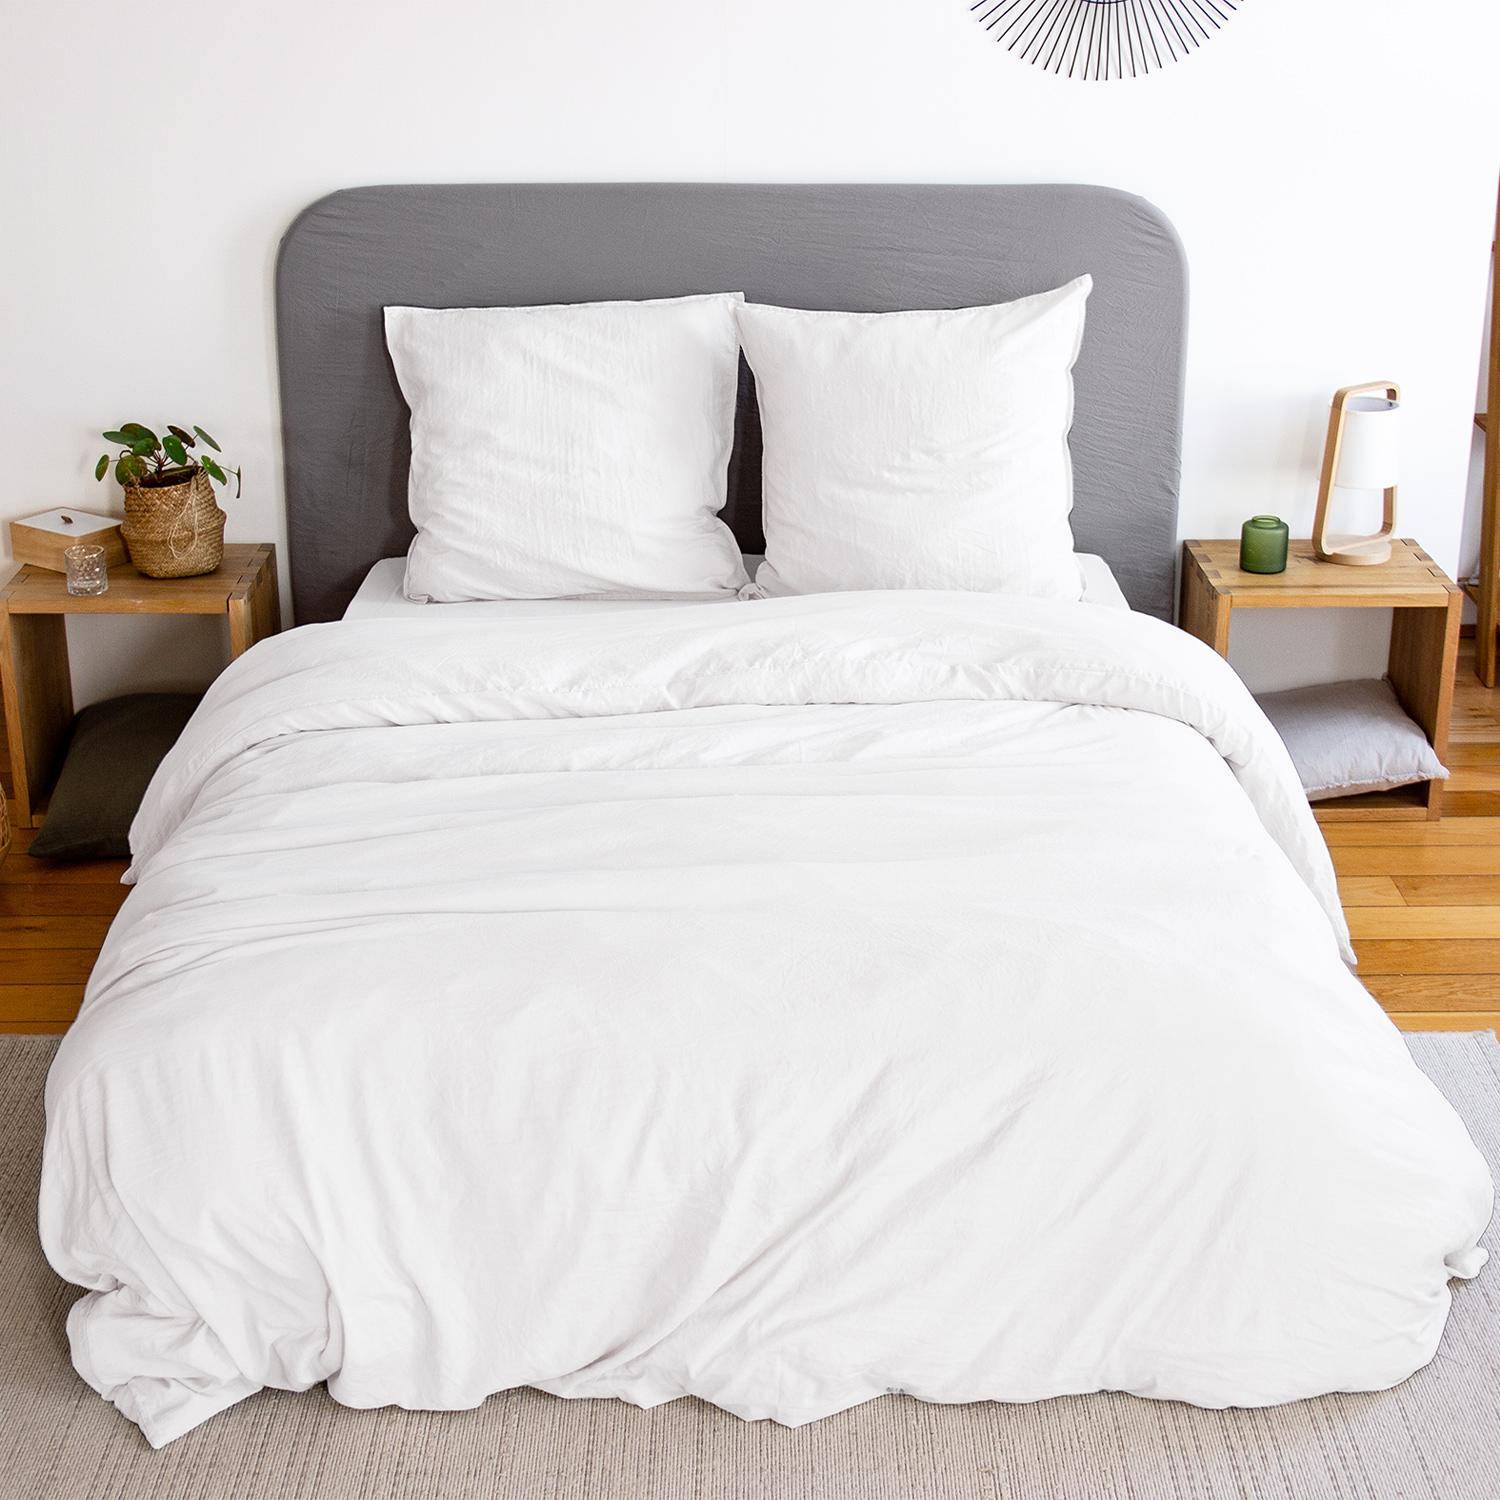 Parure de lit en microfibre lavée, blanc, 240 x 220cm pour lit 2 places avec 1 housse de couette et 2 taies d'oreillers Photo1